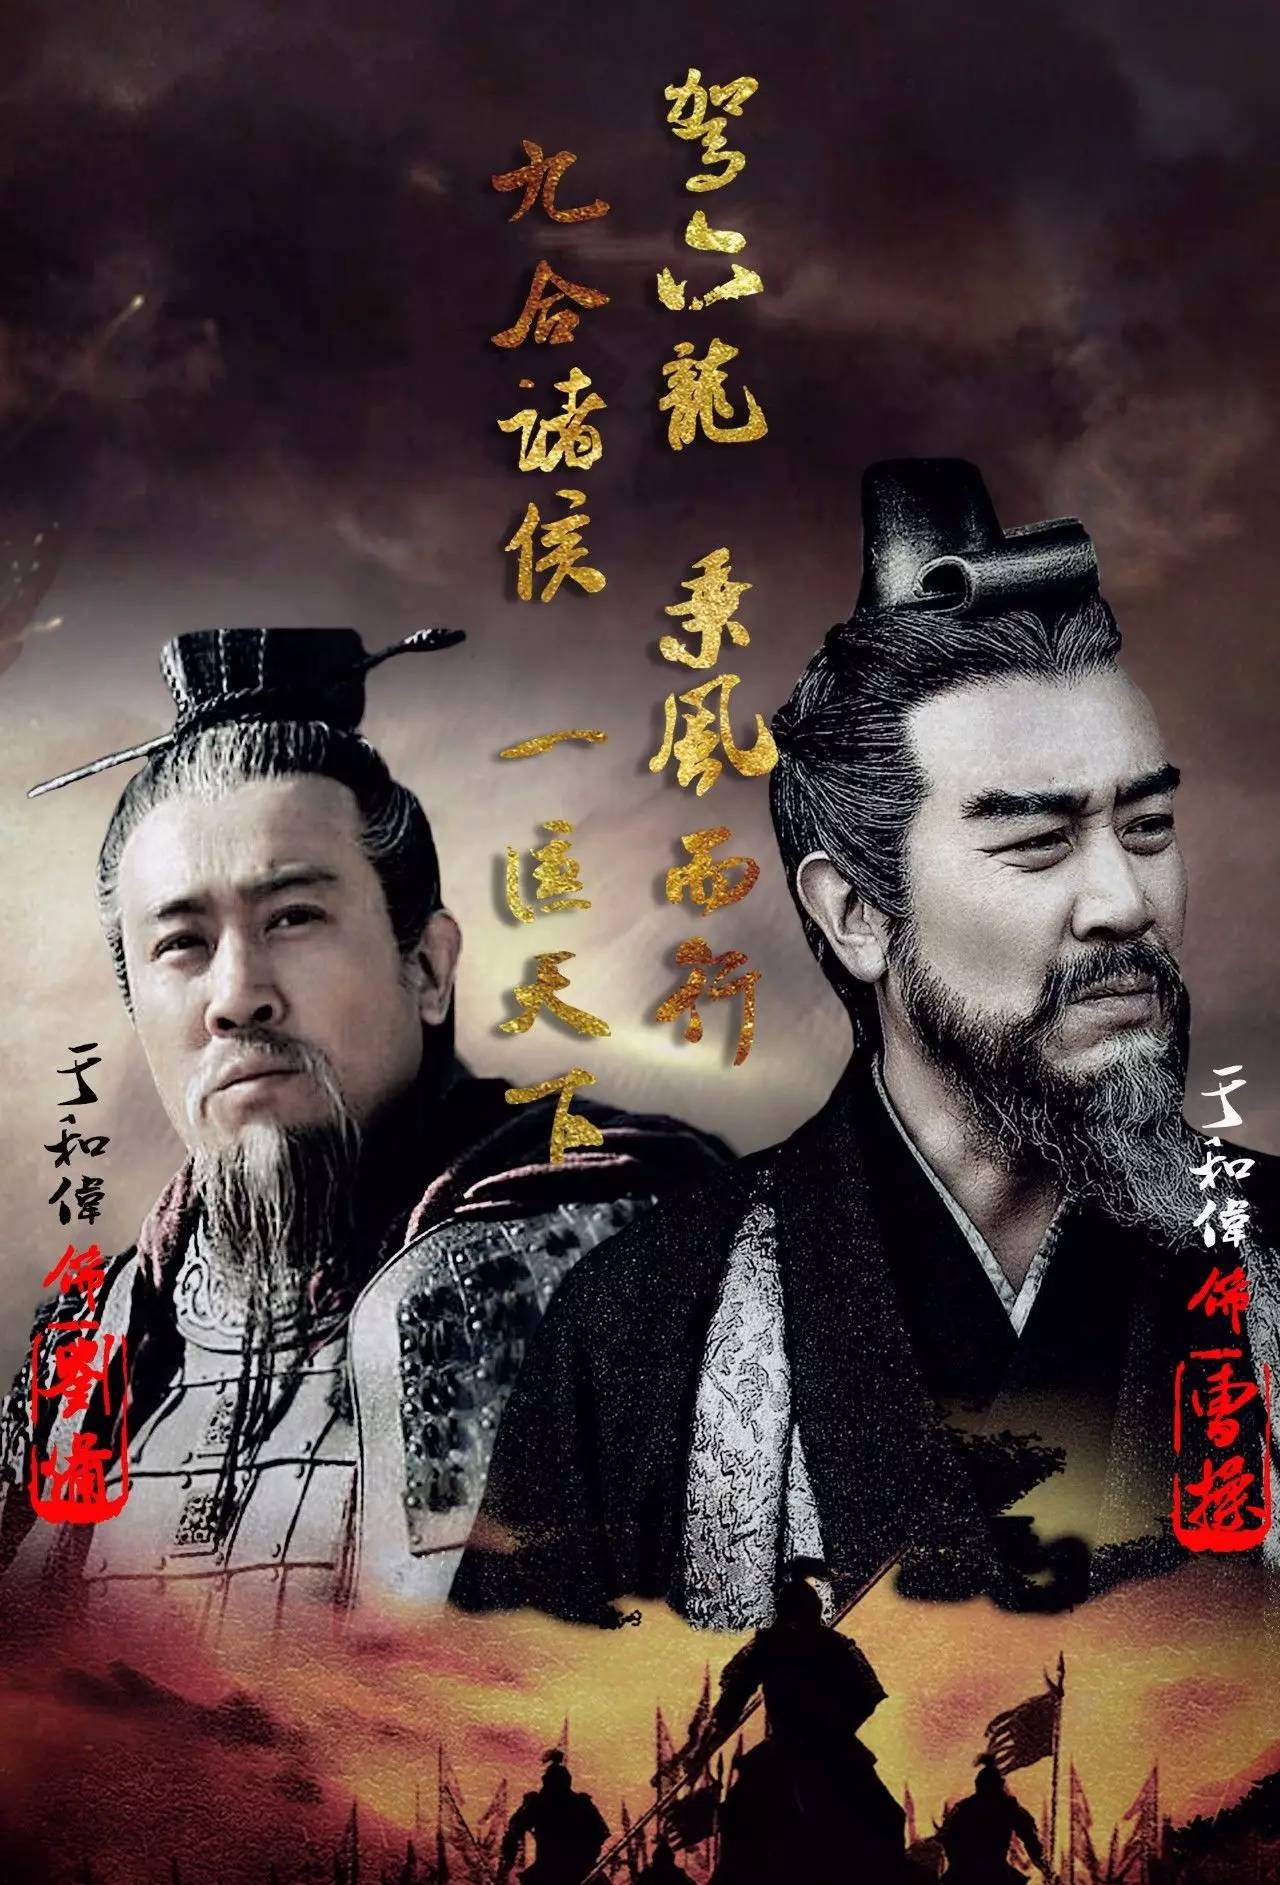 曾在《新三国》中出演刘备的他,如今在《军师联盟》中又出演了曹操,把